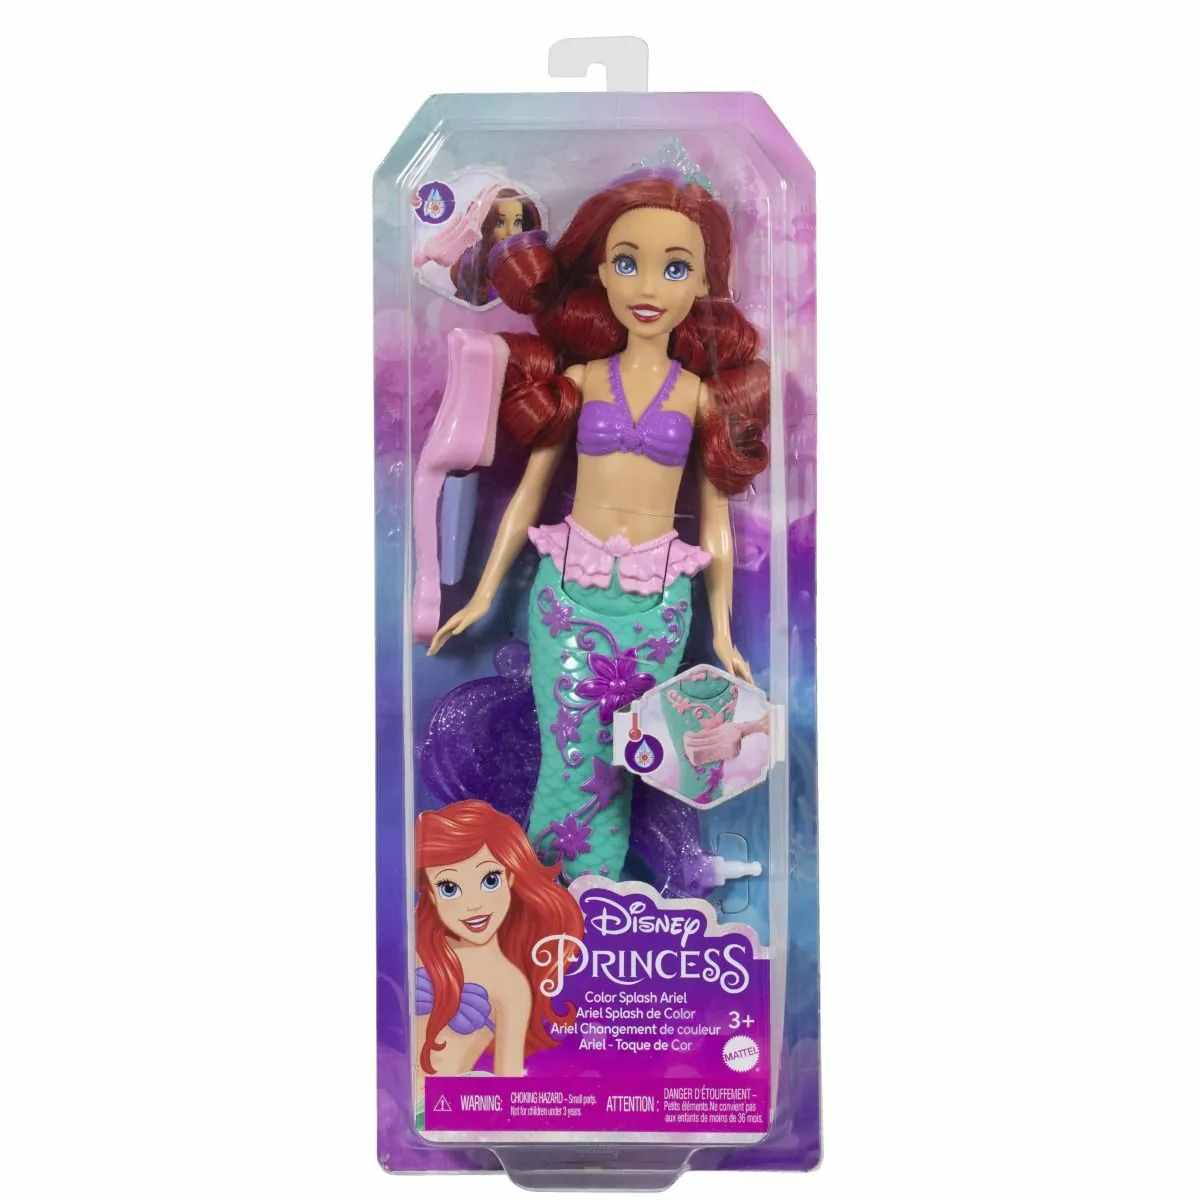 Papusa cu culori schimbatoare Disney Princess Ariel